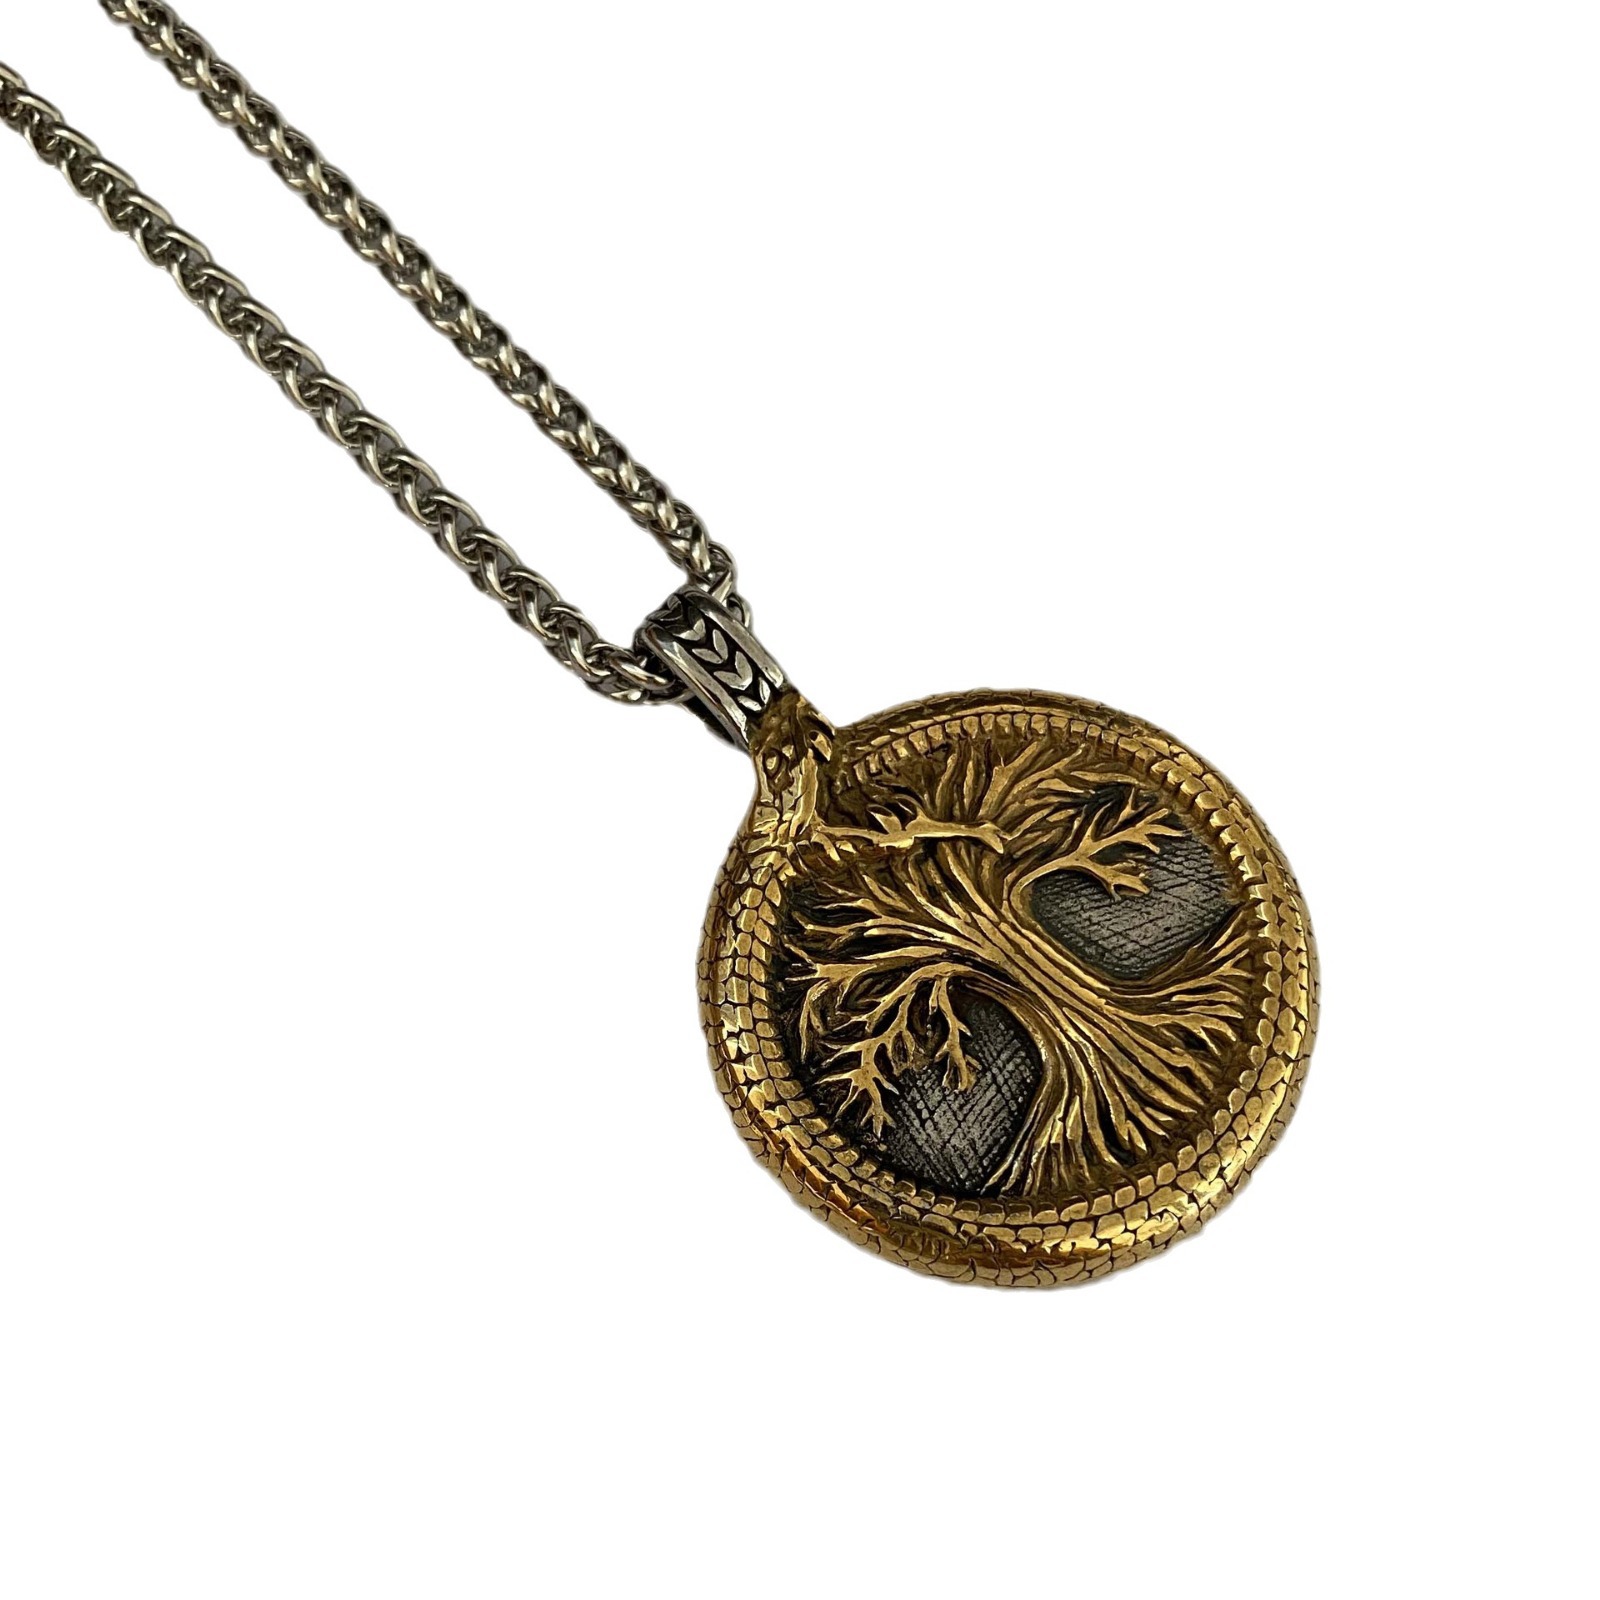 Pendant + necklace 60cm gold